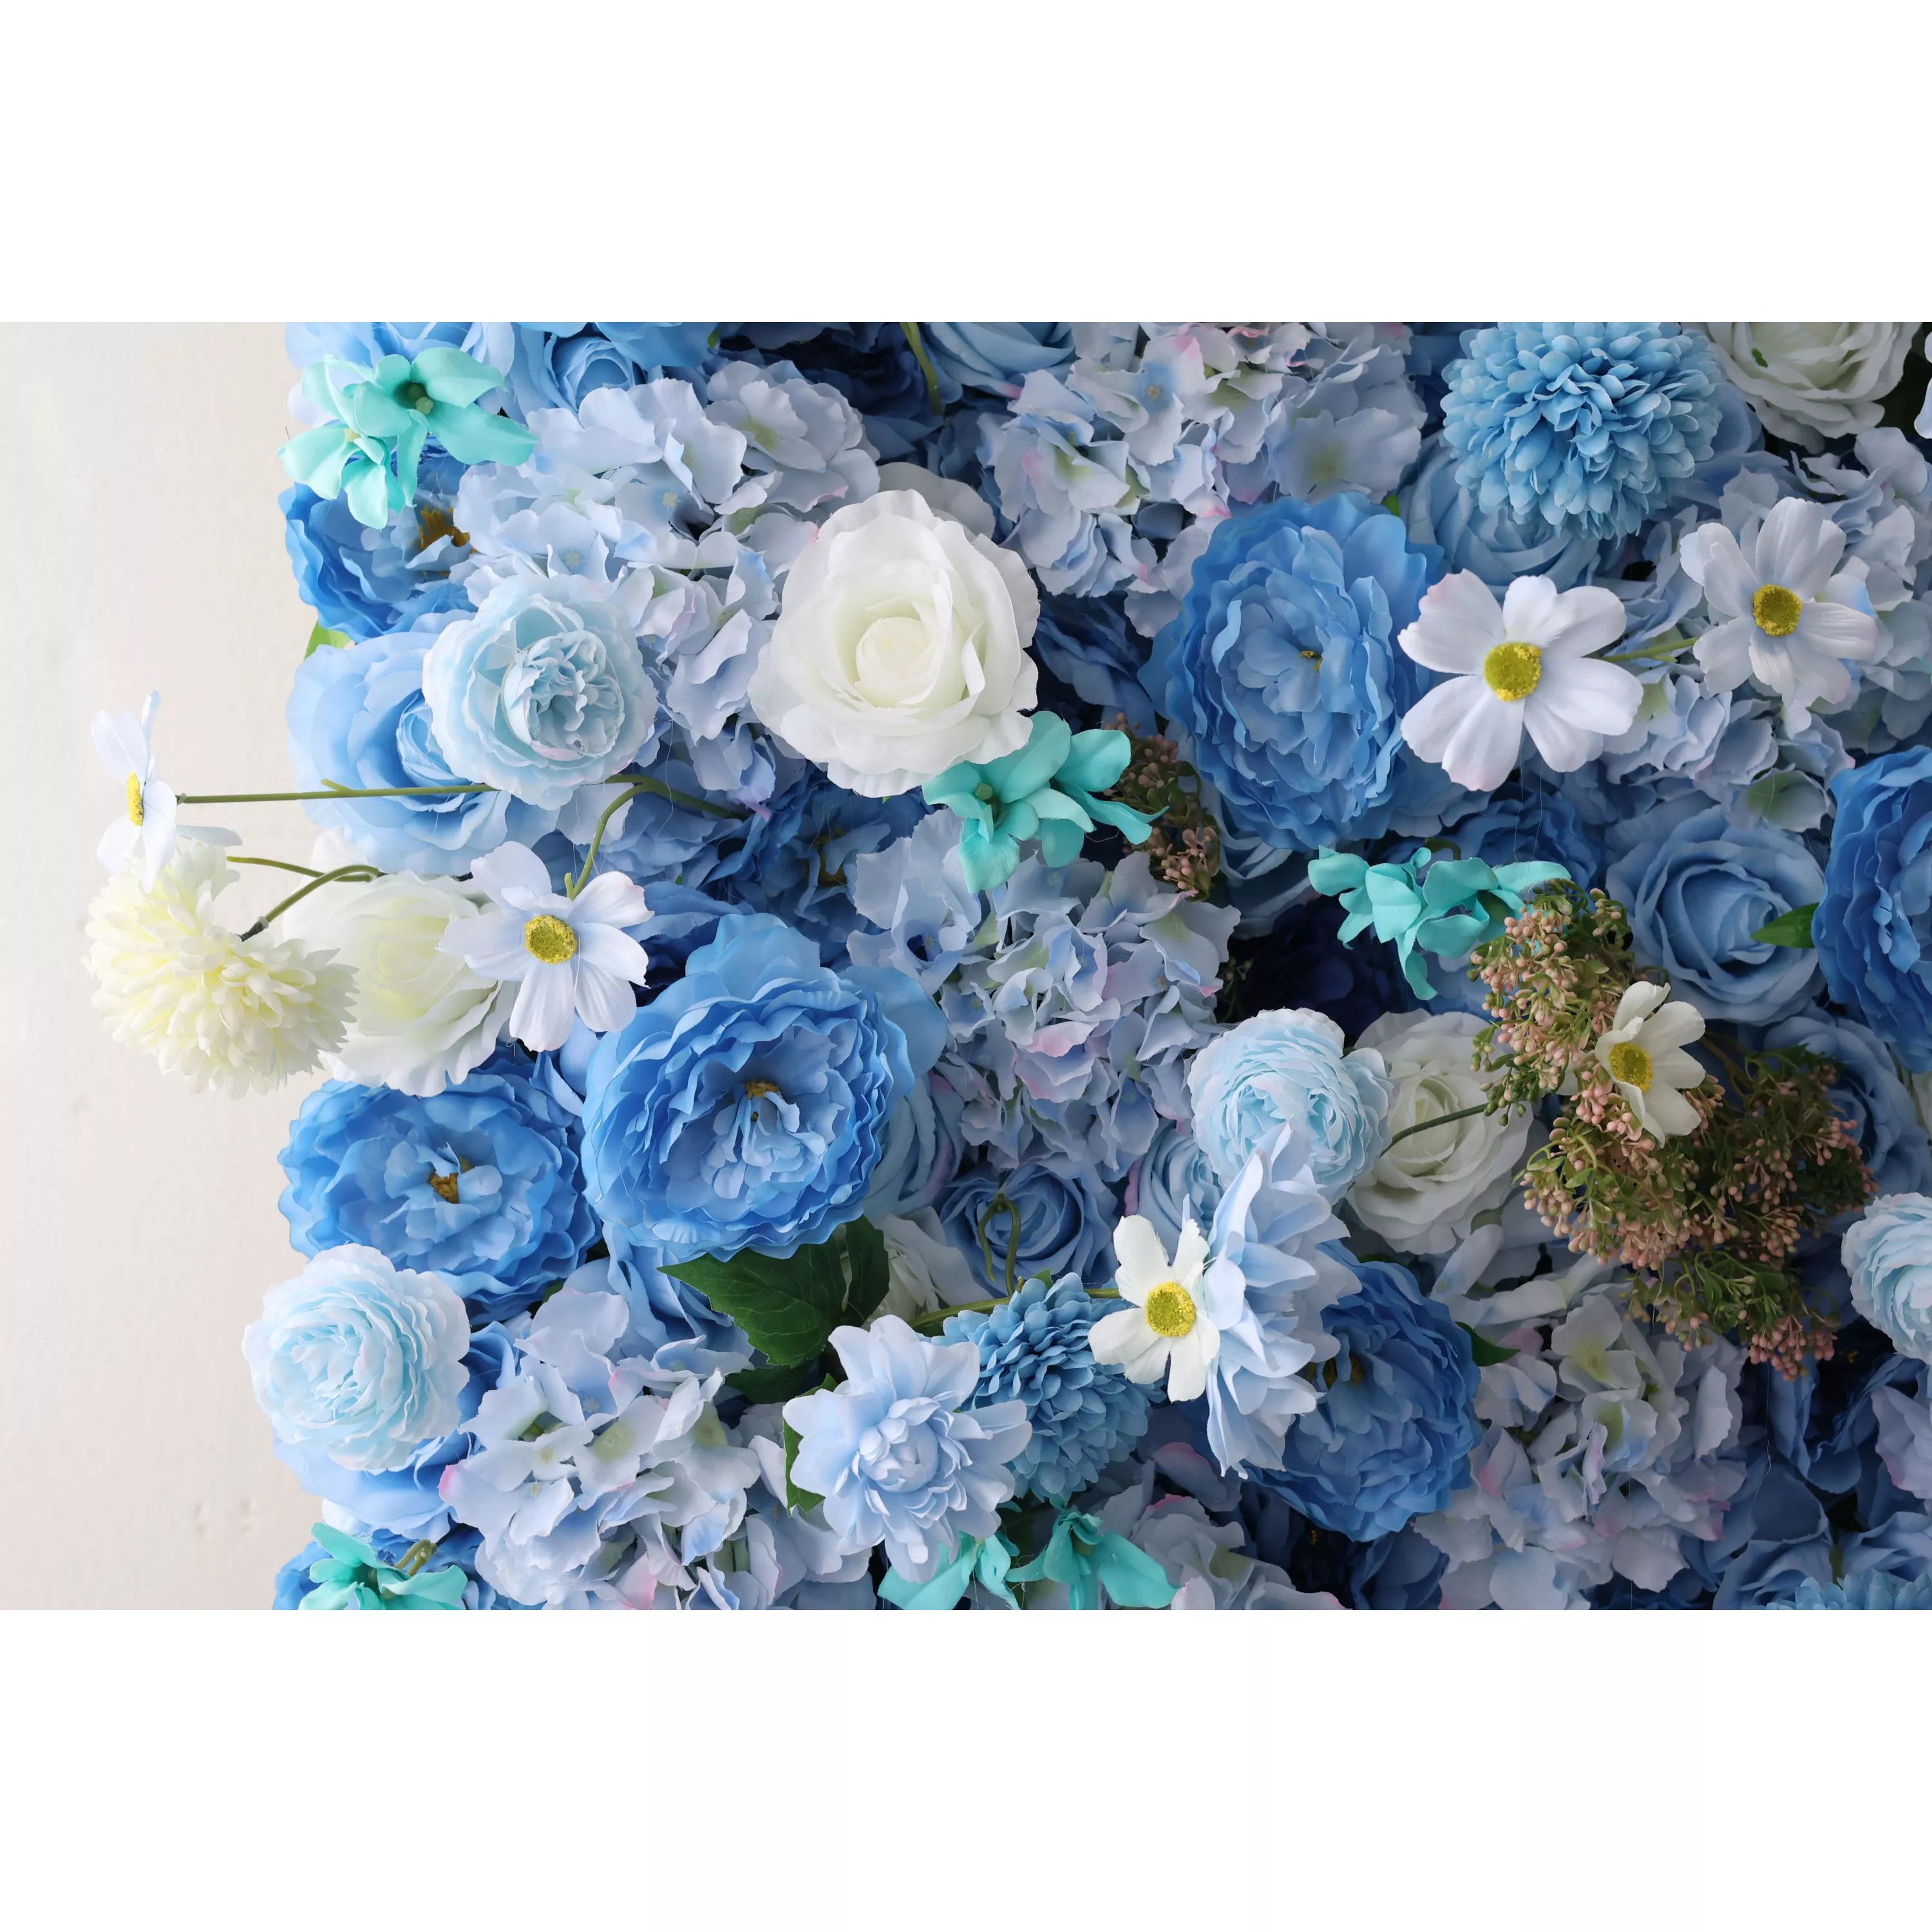 زهور فالار تقدم: الانسجام اللازوري-سيمفونية هادئة من الزهور الزرقاء والصفراء الفاتحة-جدار زهور مثالي للمواضيع البحرية ، والأحداث الداخلية الهادئة